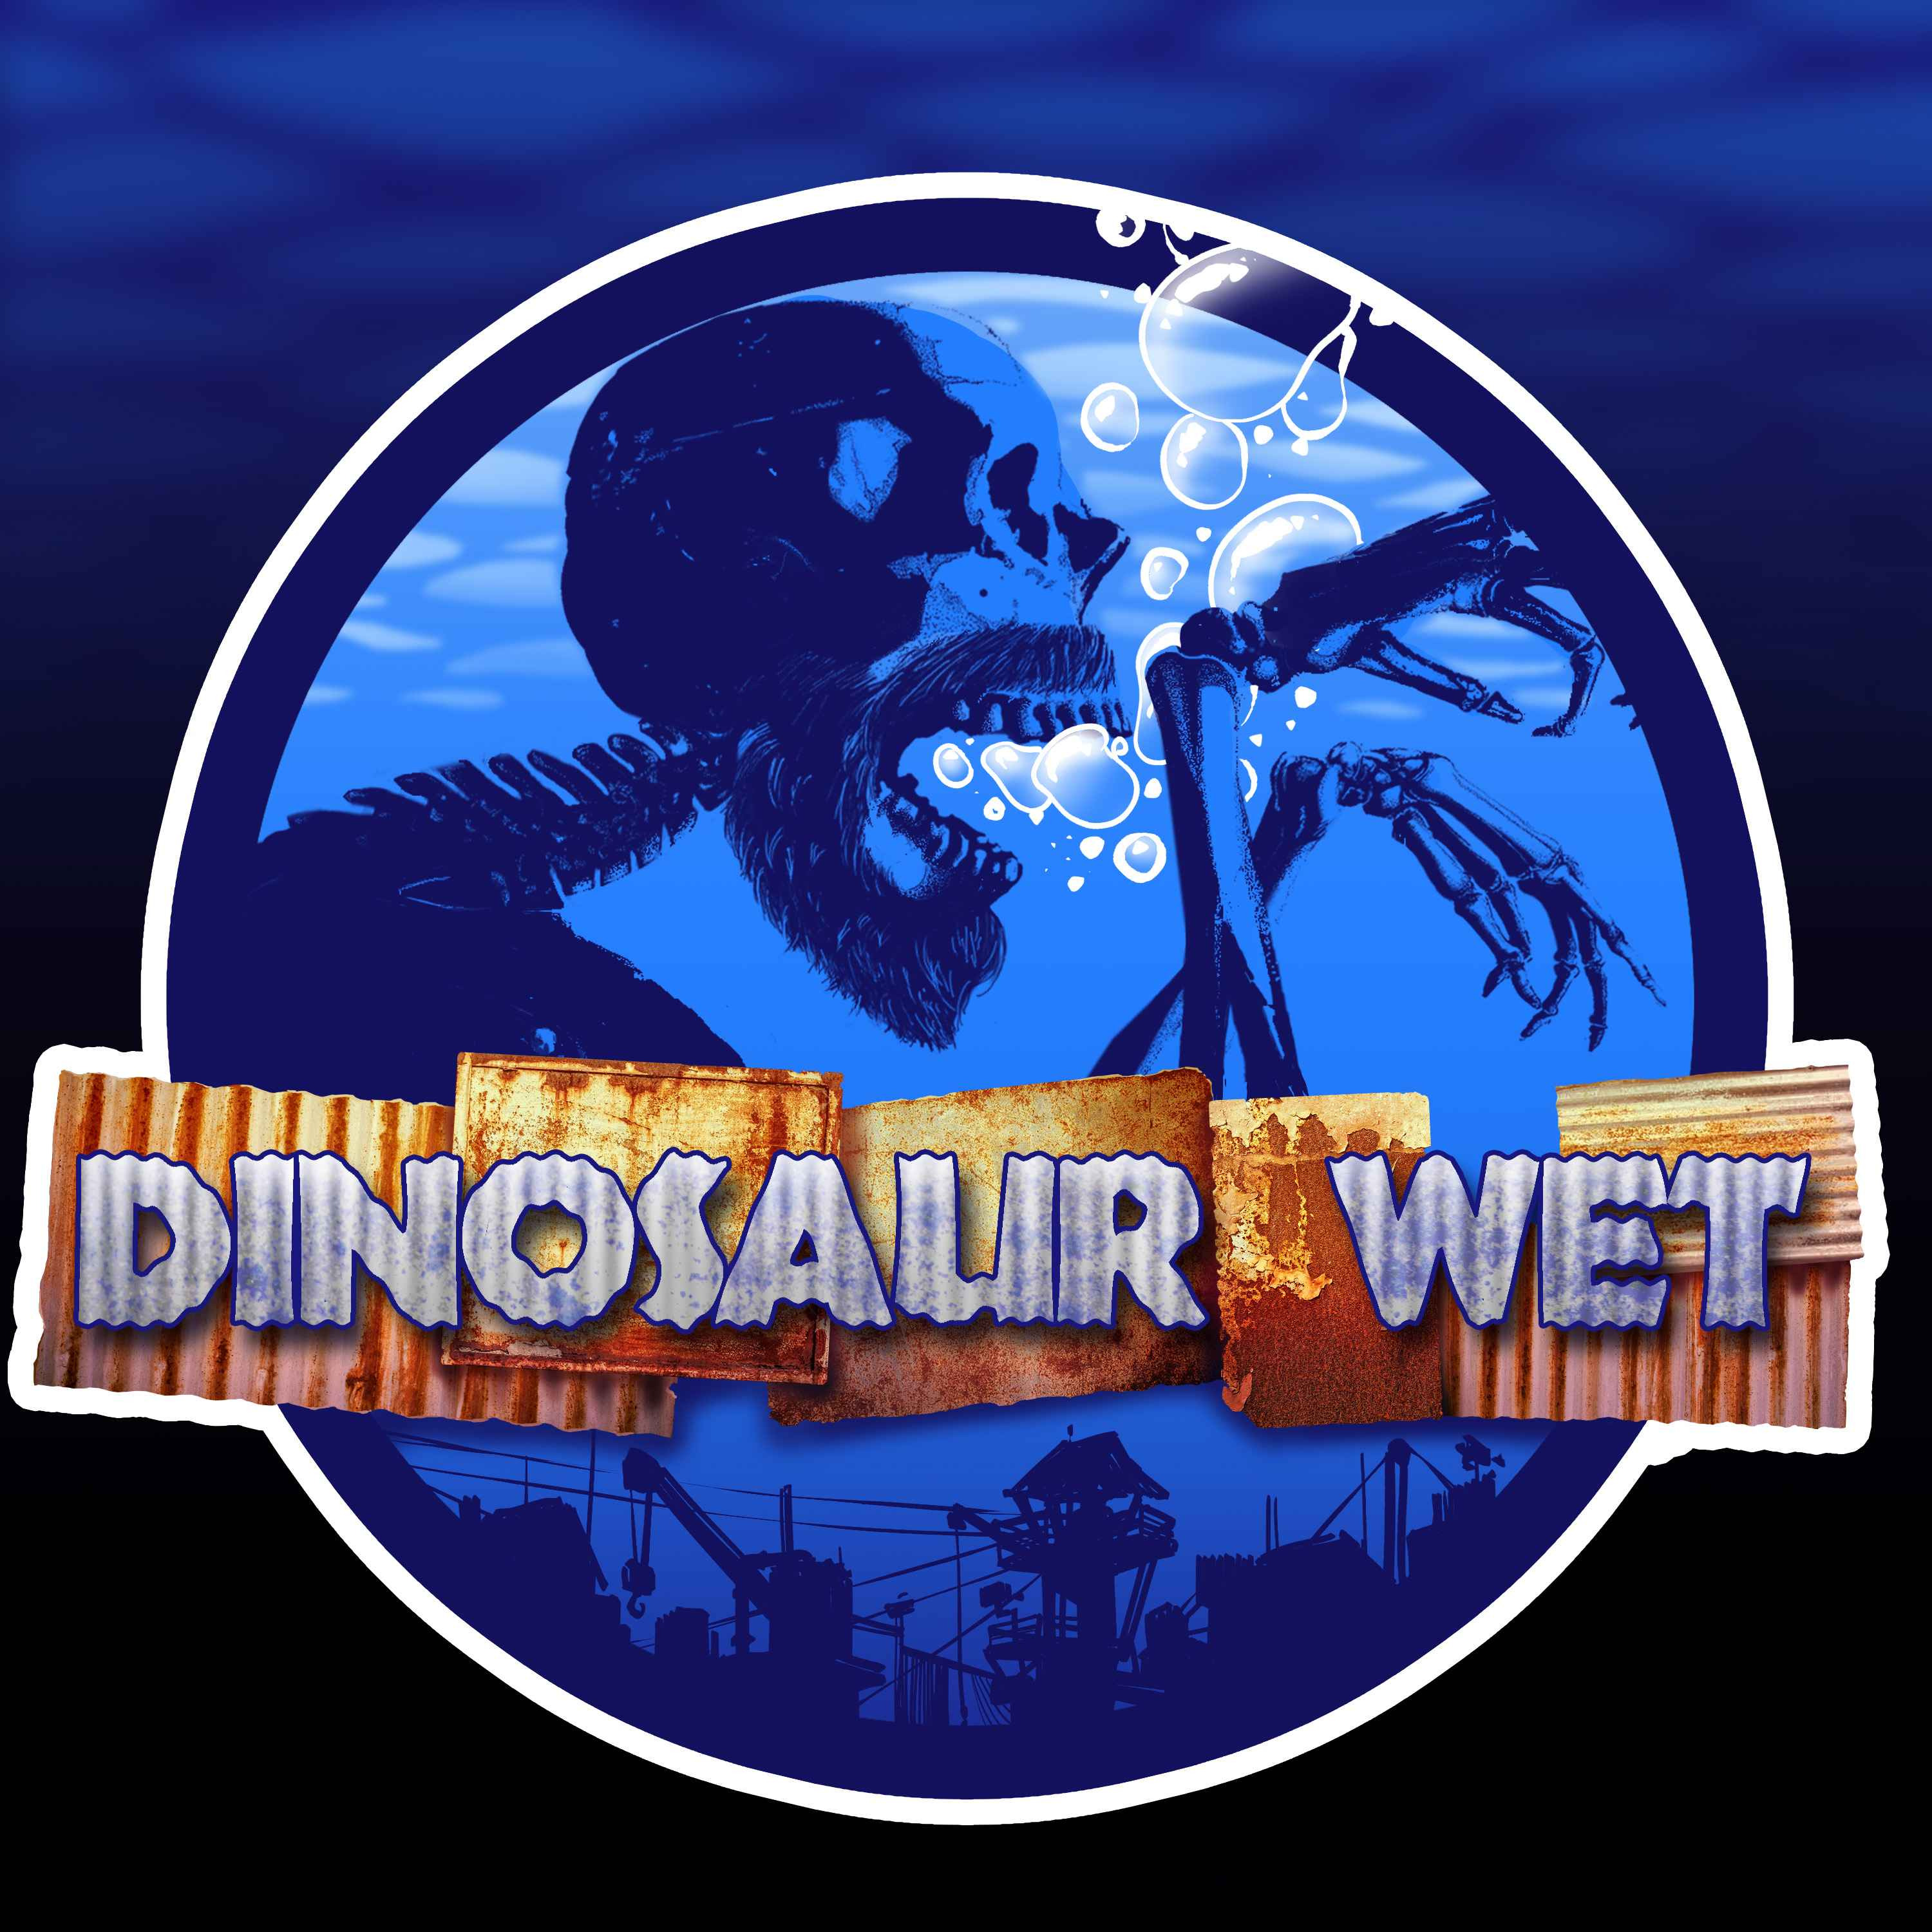 Dinosaur Wet Trailer